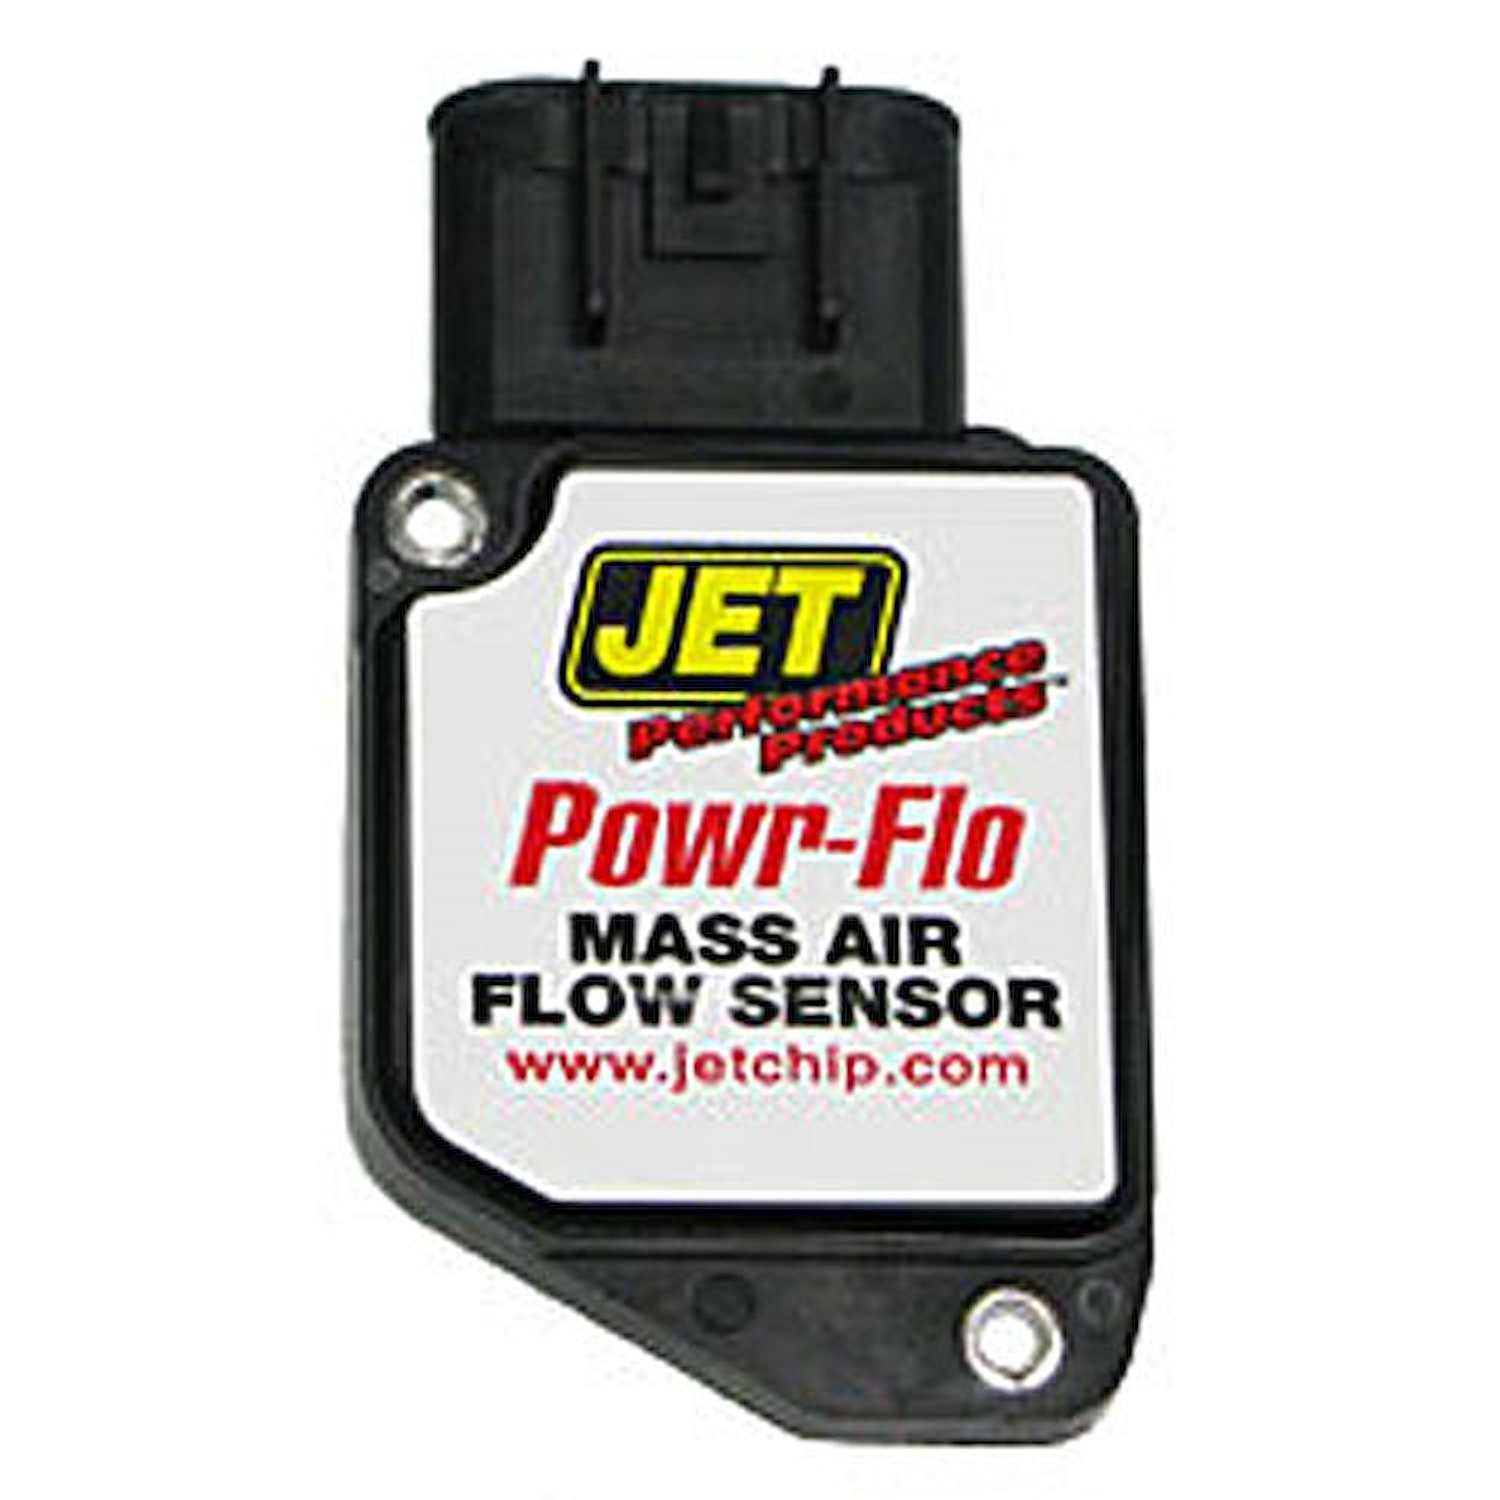 Powr-Flo Mass Air Sensor 2004-2006 Chevy Colorado &